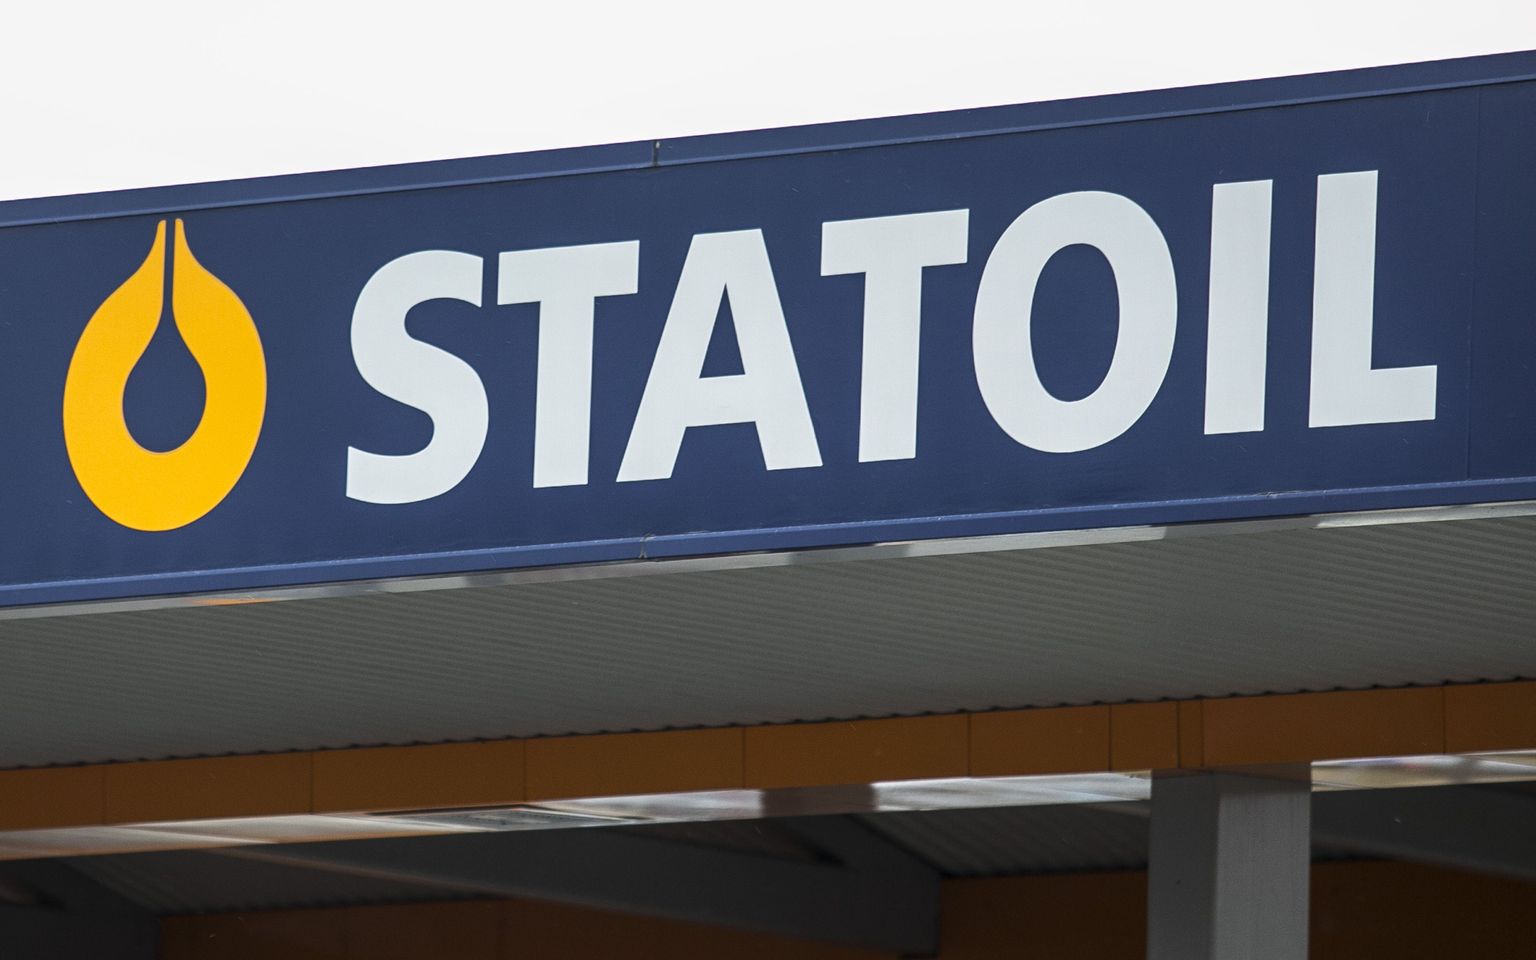 Statoili teenindusjaamad on avatud 24 tundi ööpäevas ning see eeldab töötamist ka öisel ajal.